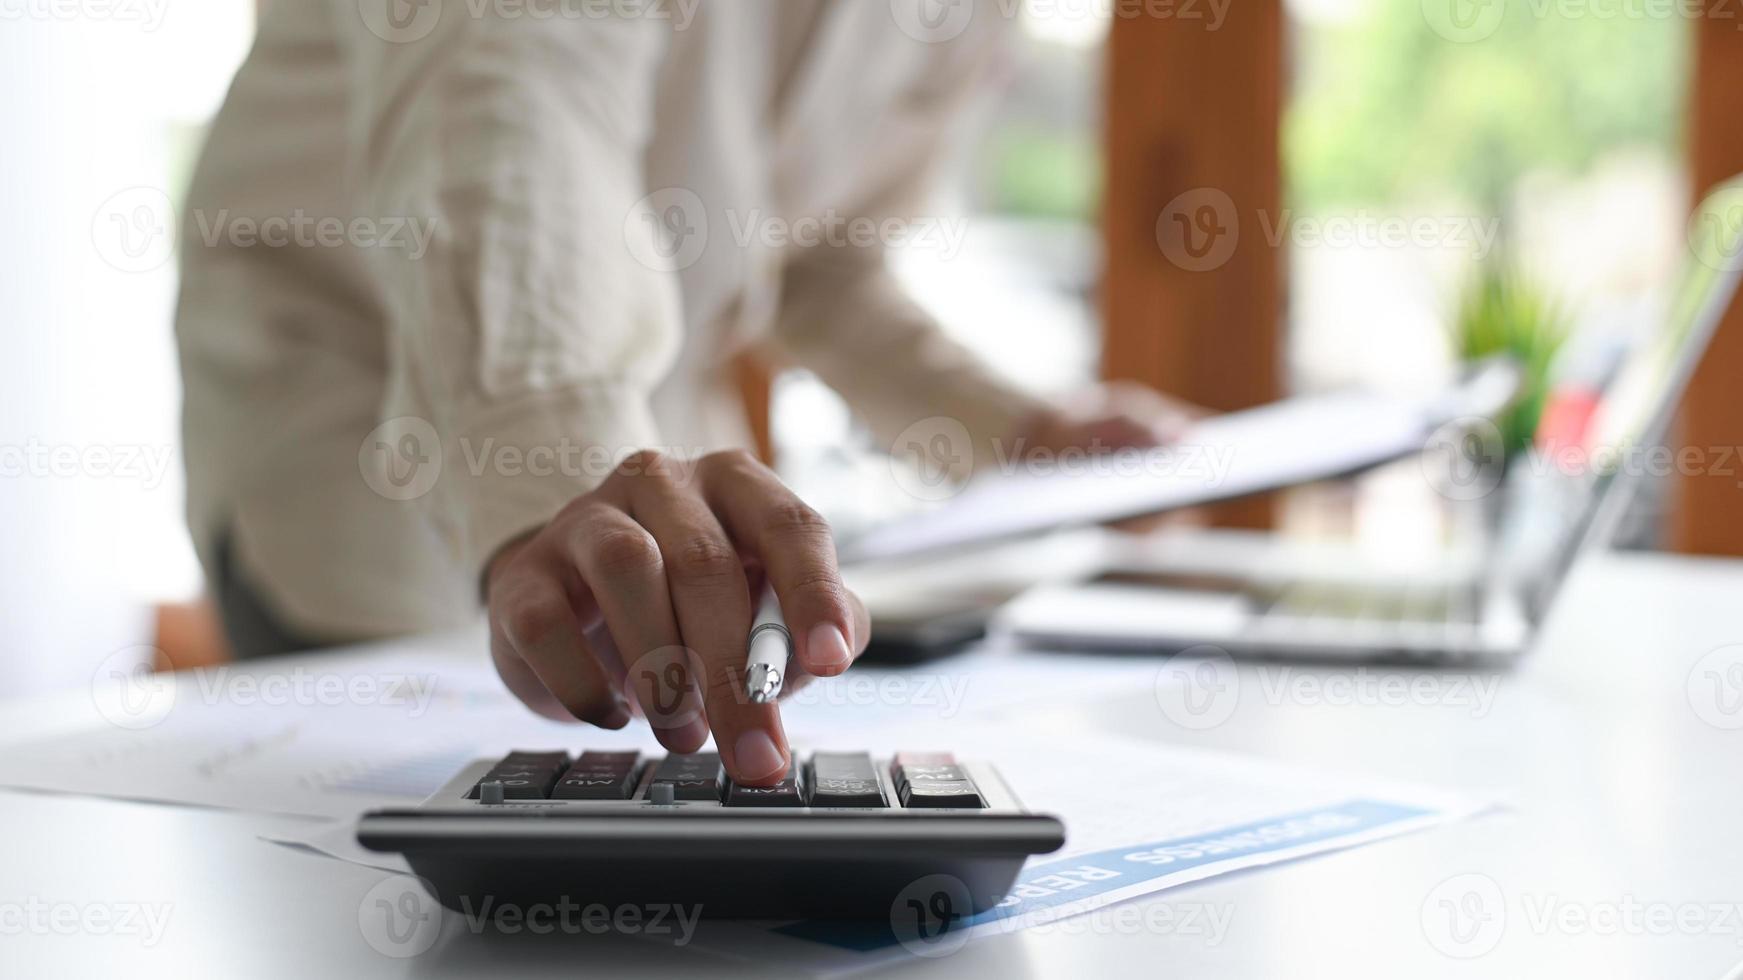 Primer plano de un joven sosteniendo un bolígrafo y usando una calculadora colocada en el frente.Conceptos de negocio. foto